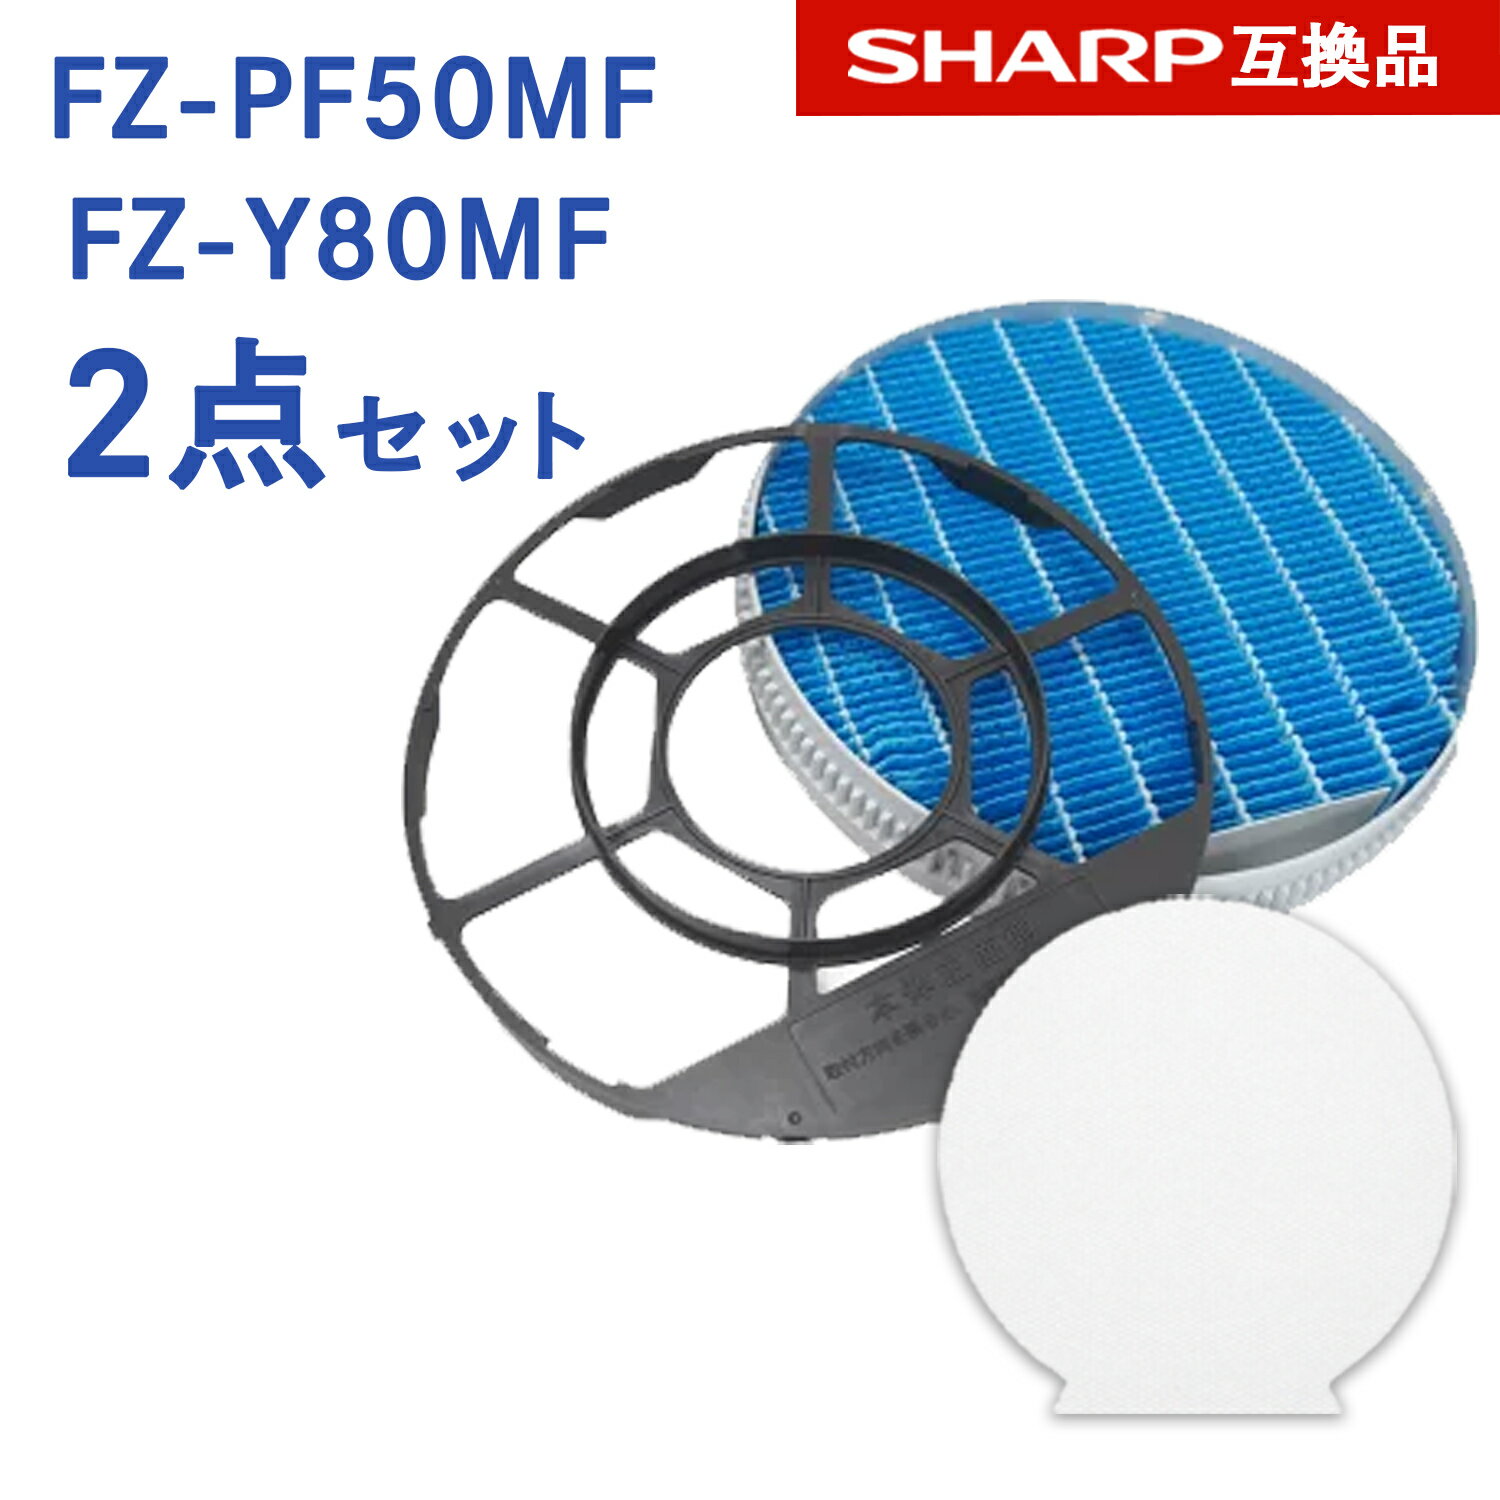 【レビュー特典あり】SHARP ( シャープ )互換品 FZ-PF50MF 使い捨て加湿プレフィルター 6枚入り / FZ-Y80MF 加湿フィルター (枠付き) 純正品同等 プラズマクラスター 加湿 空気清浄機用 交換用フィルター フィルター fz-pf50mf fz-y80mf